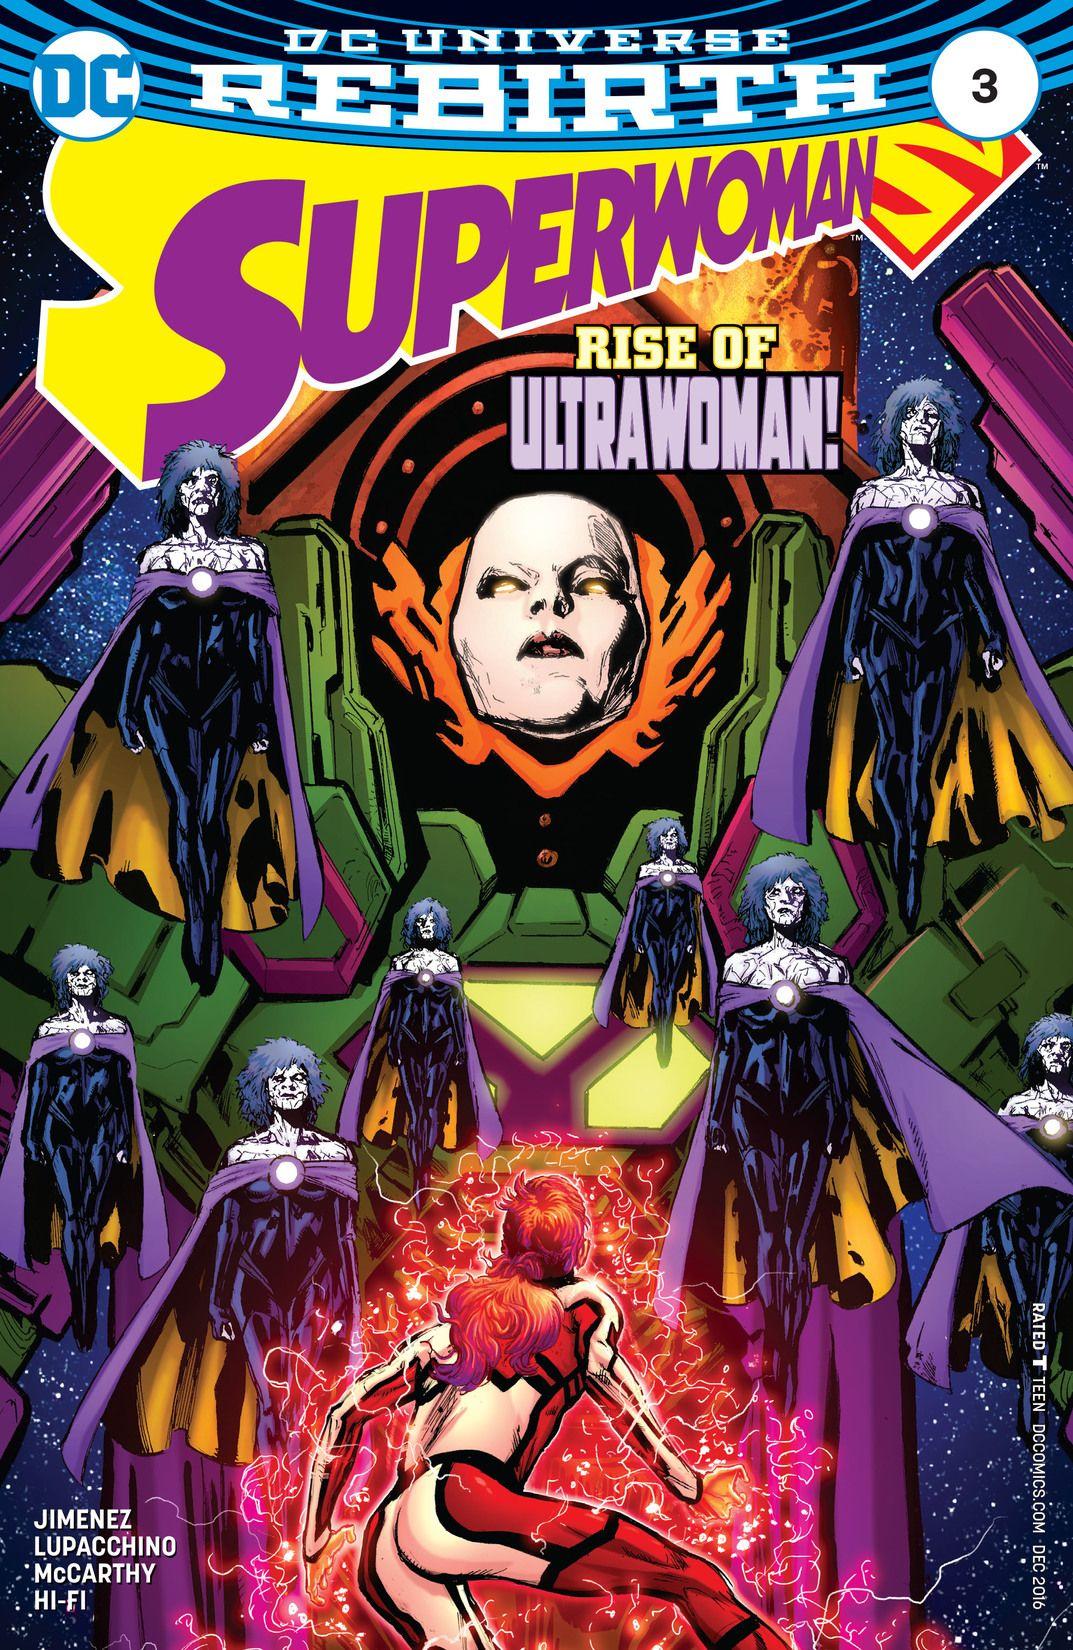 Superwoman Vol. 1 #3